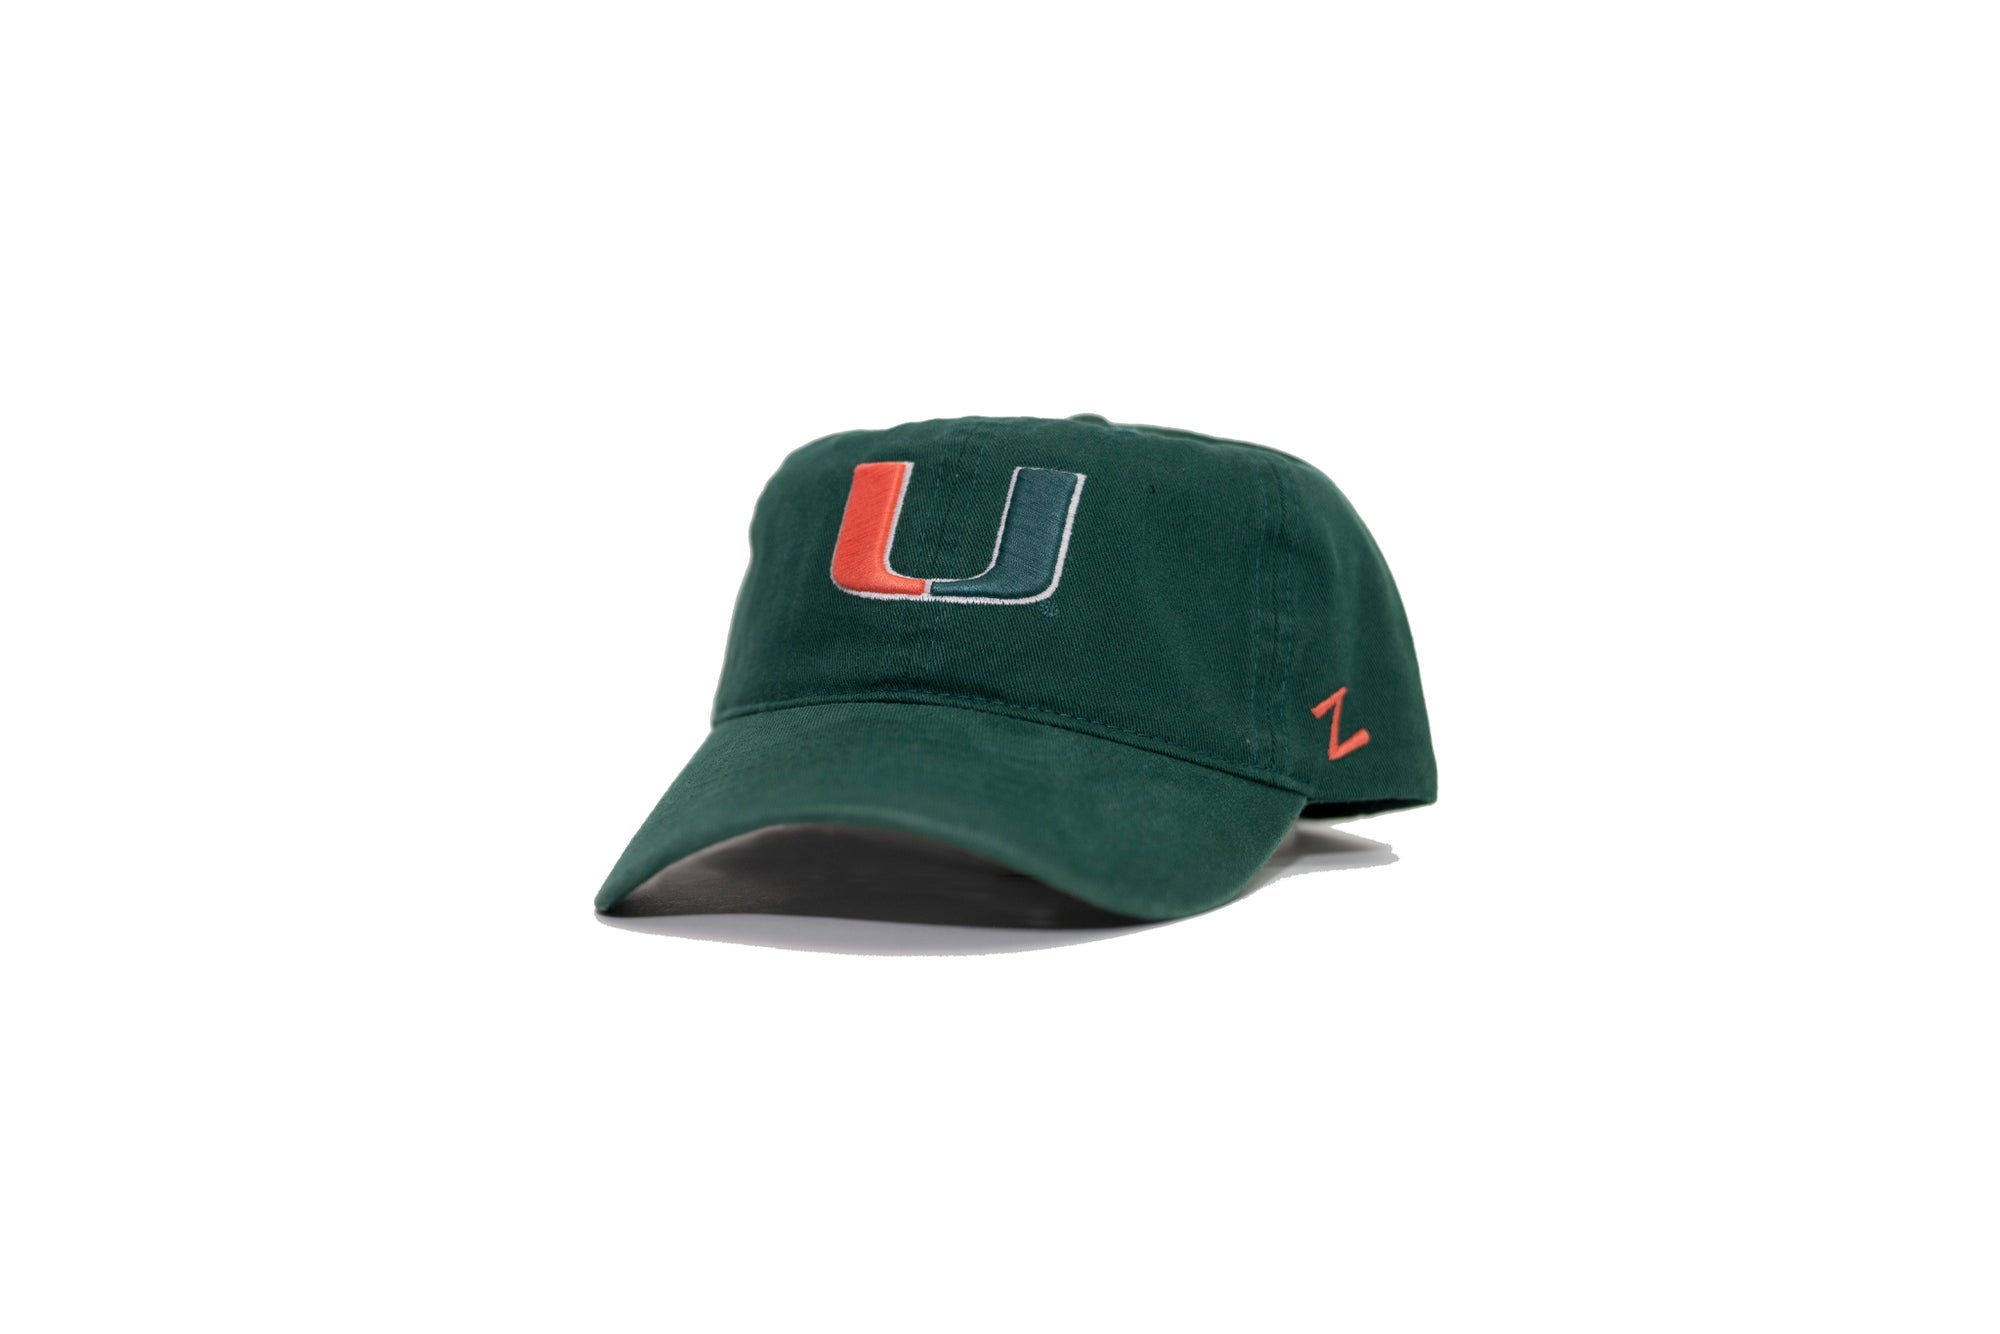 Miami UM Scholarship Light Hat